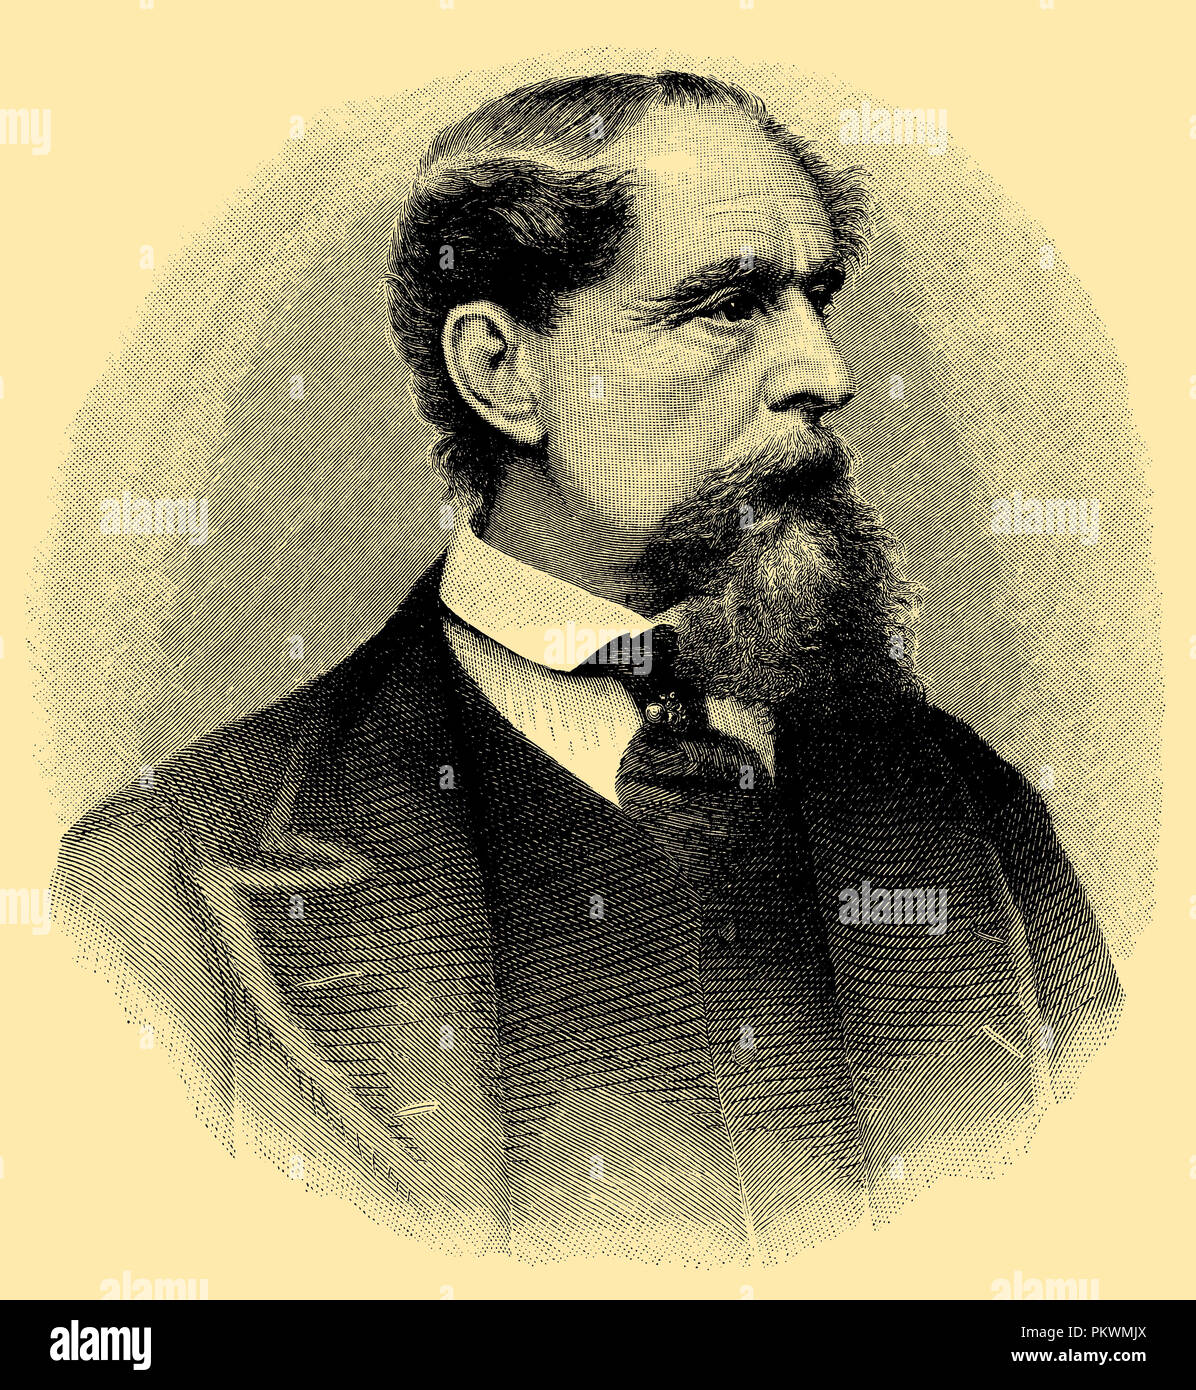 Charles Dickens à l'âge de 56 ans. Après la gravure par J.G. Armitage, dans la région de Forster, le Lilfe de Dickens, traduit par Althaus, Berlin, 1873 Banque D'Images